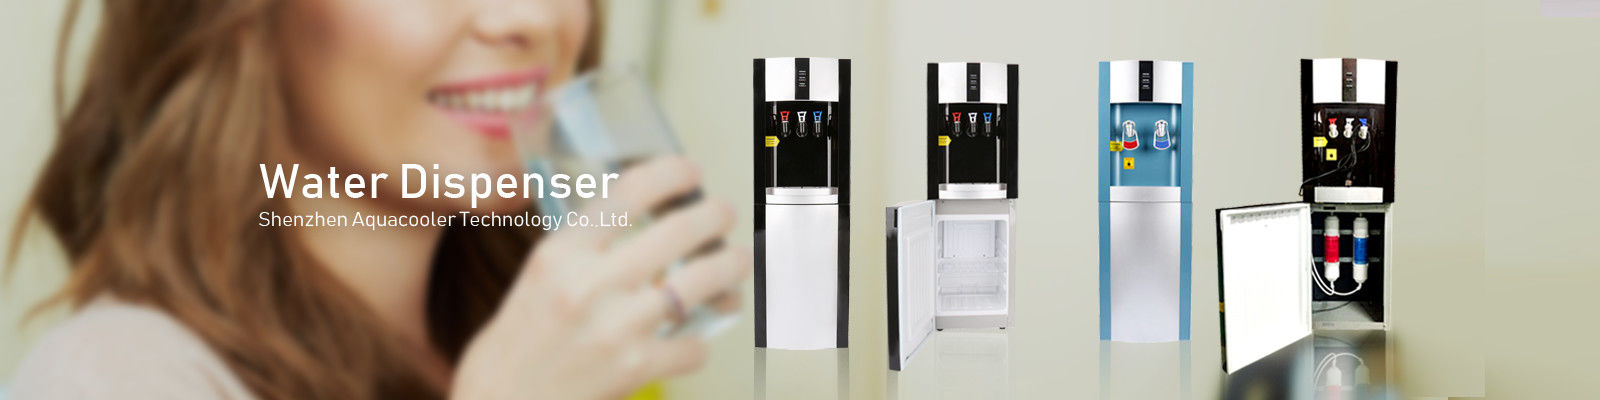 Classic Design Floor Standing Water Dispenser 3 Tap With 16 Litres Fridge